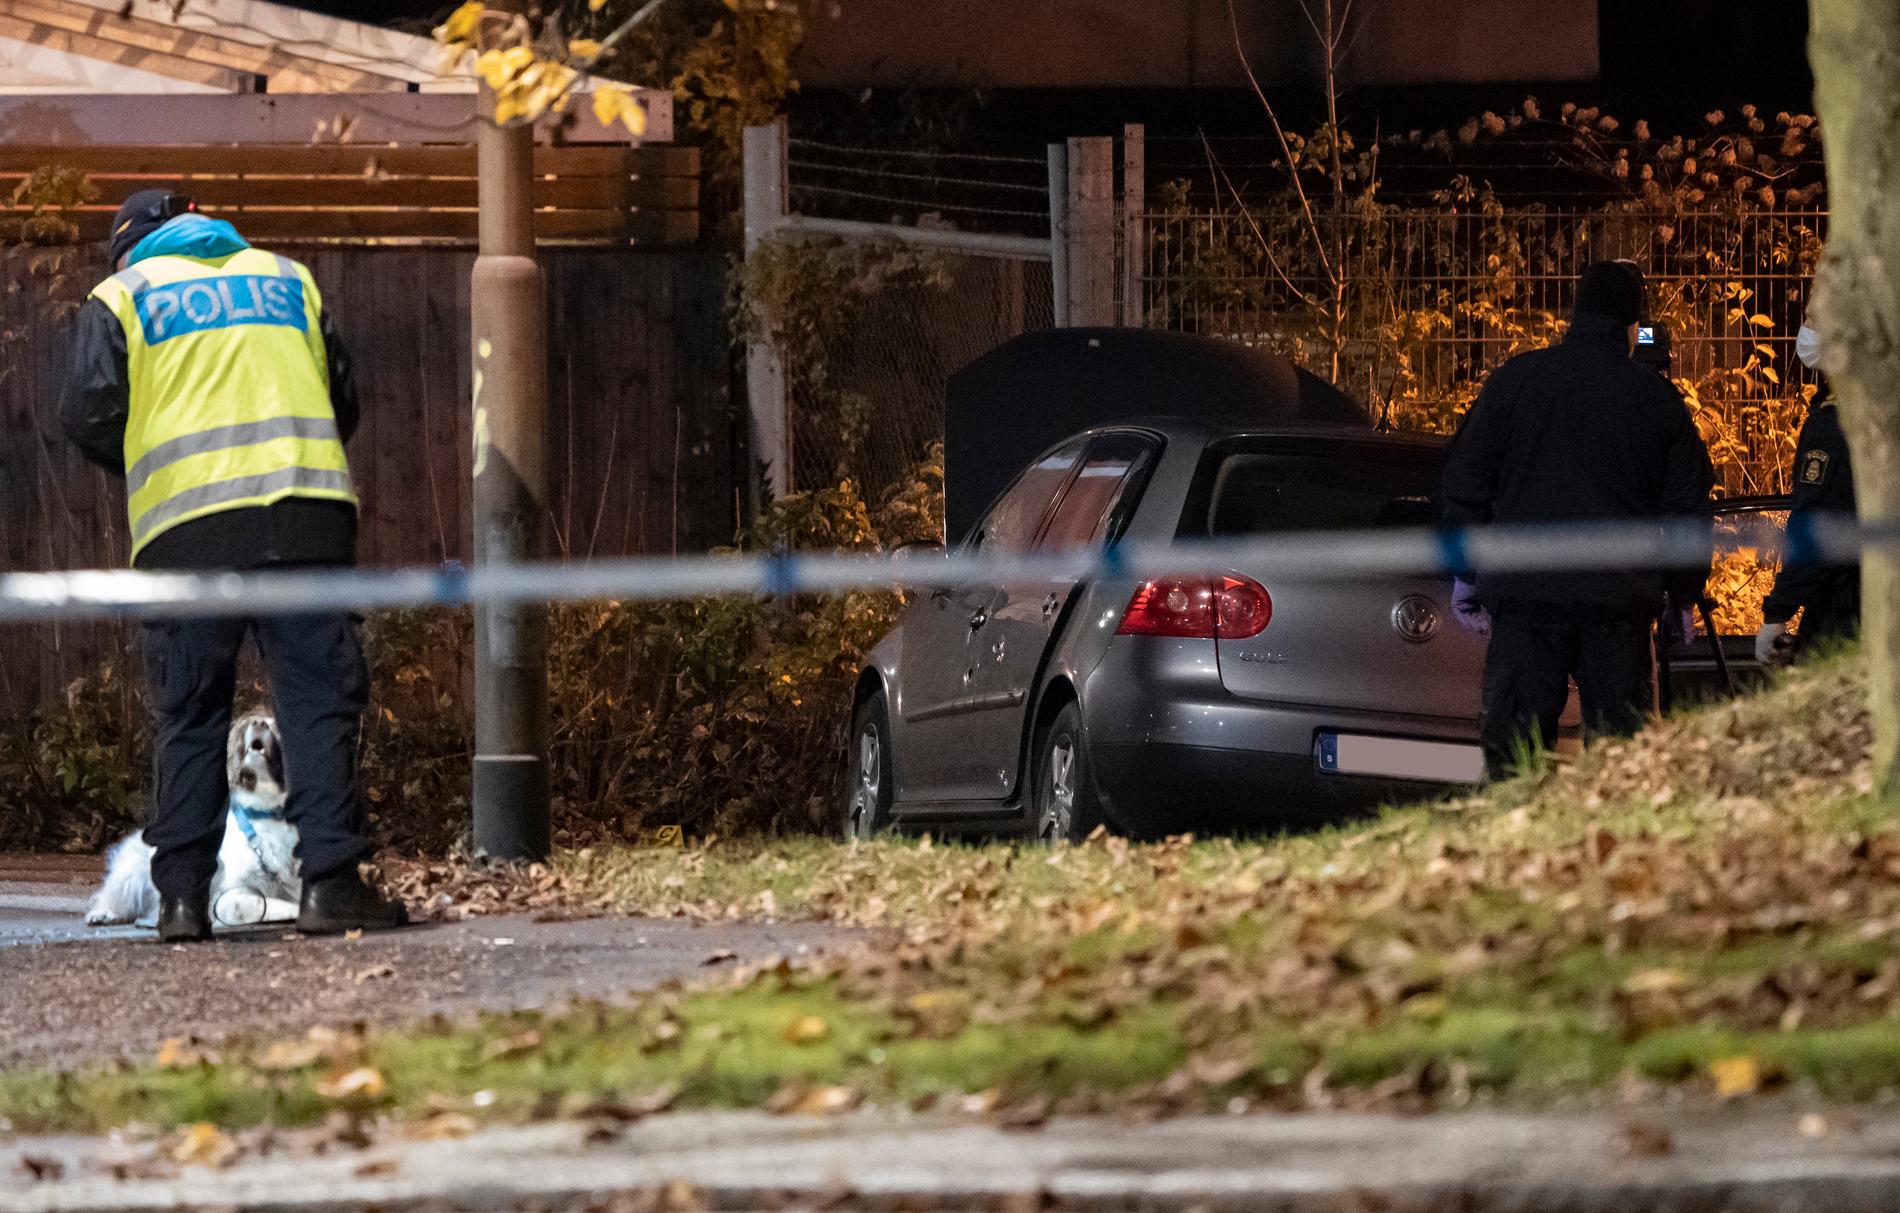 Polis med vapenhund och kriminaltekniker undersöker under natten till tisdagen en bil med skador innanför avspärrningarna efter en skottlossning på Jöns Risbergsgatan.